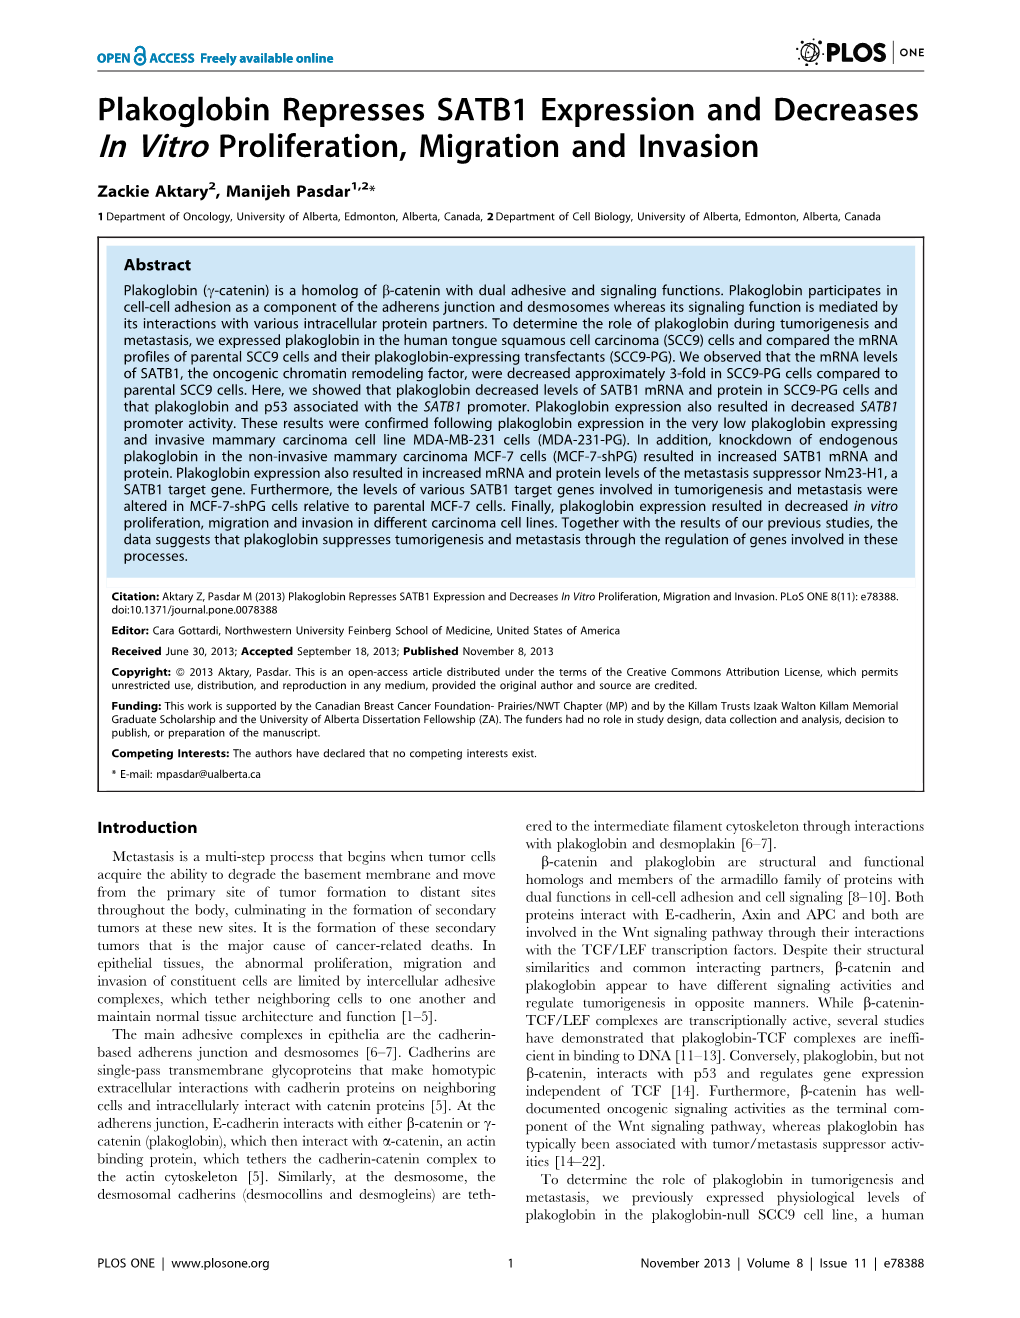 Plakoglobin Represses SATB1 Expression and Decreases in Vitro Proliferation, Migration and Invasion